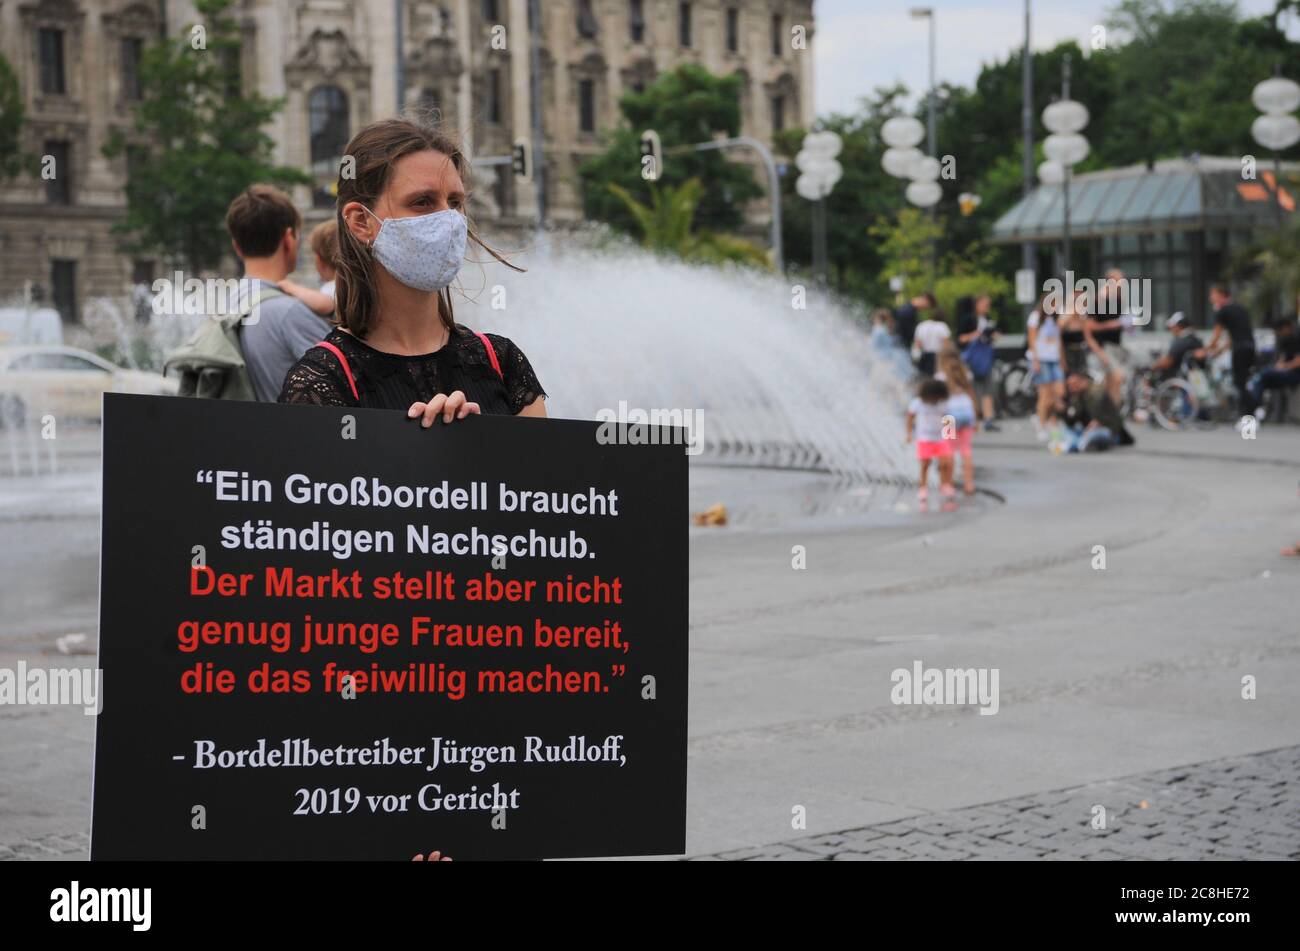 Des femmes de l'Association Terre de femmes manifestent contre la prostitution à Munich, le 24 juillet 2020. Ils veulent que les hommes soient juridiquement responsables Banque D'Images